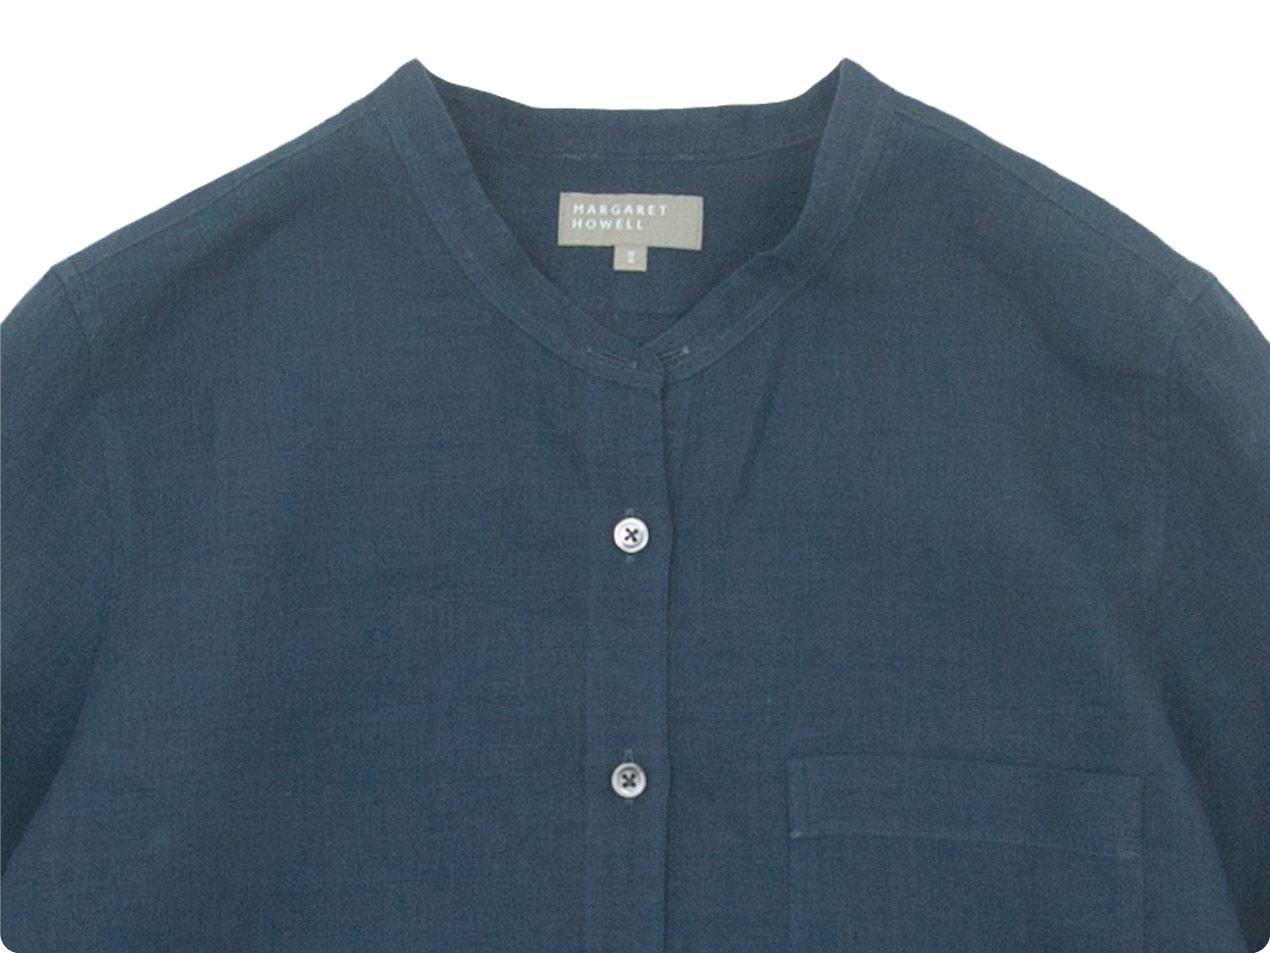 MARGARET HOWELL linen blue-gray shirt